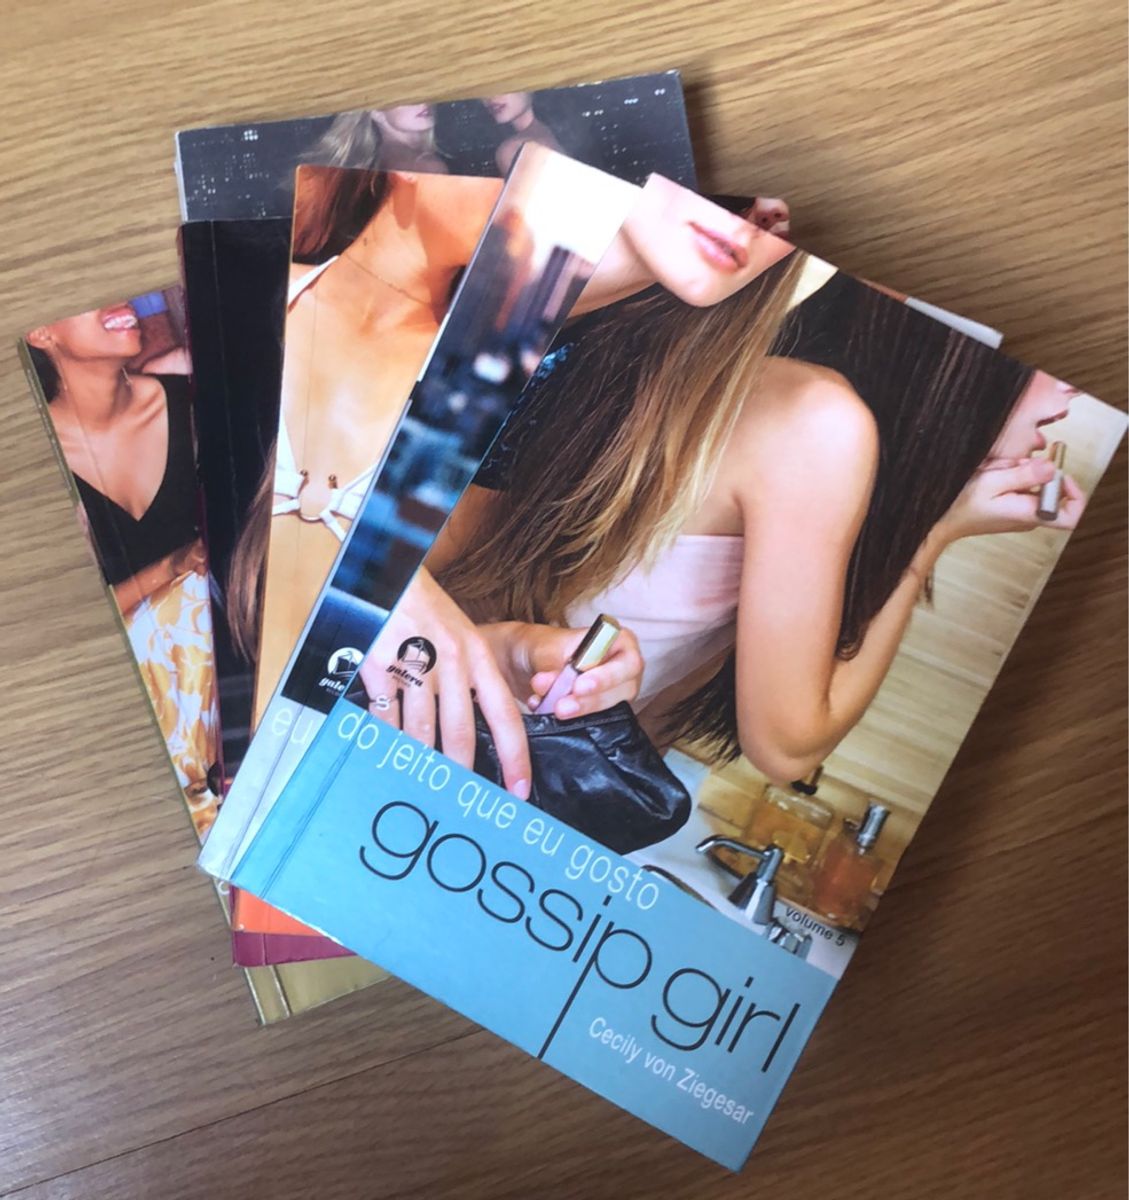 Coleção de Livros Gossip Girl, Livro Editora Galera Record Usado 15588392, enjoei